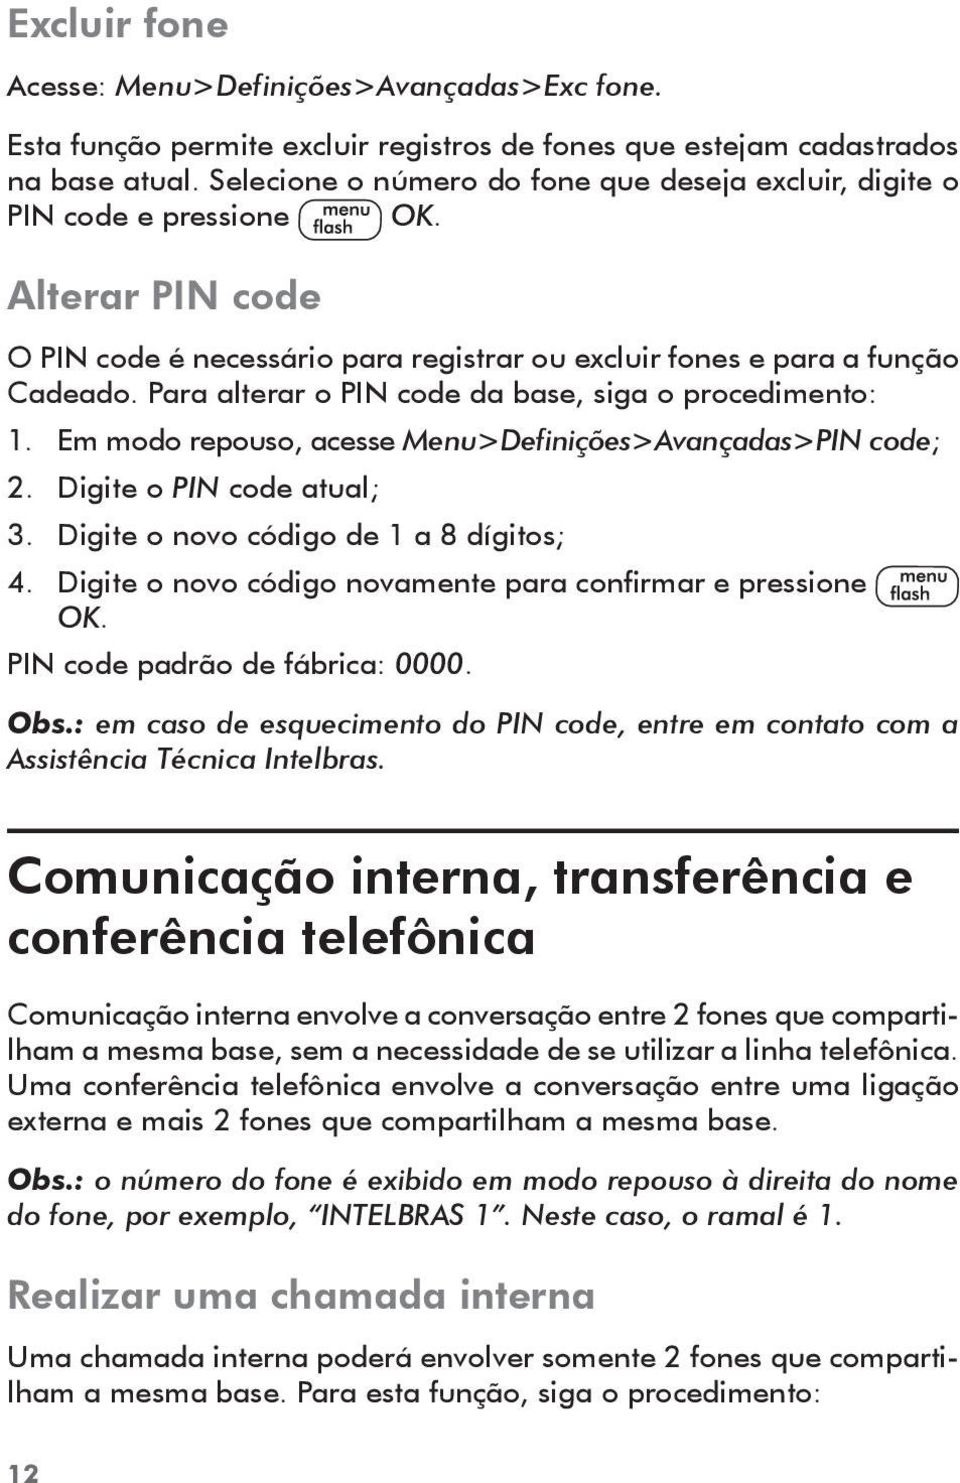 Para alterar o PIN code da base, siga o procedimento: 1. Em modo repouso, acesse Menu>Definições>Avançadas>PIN code; 2. Digite o PIN code atual; 3. Digite o novo código de 1 a 8 dígitos; 4.